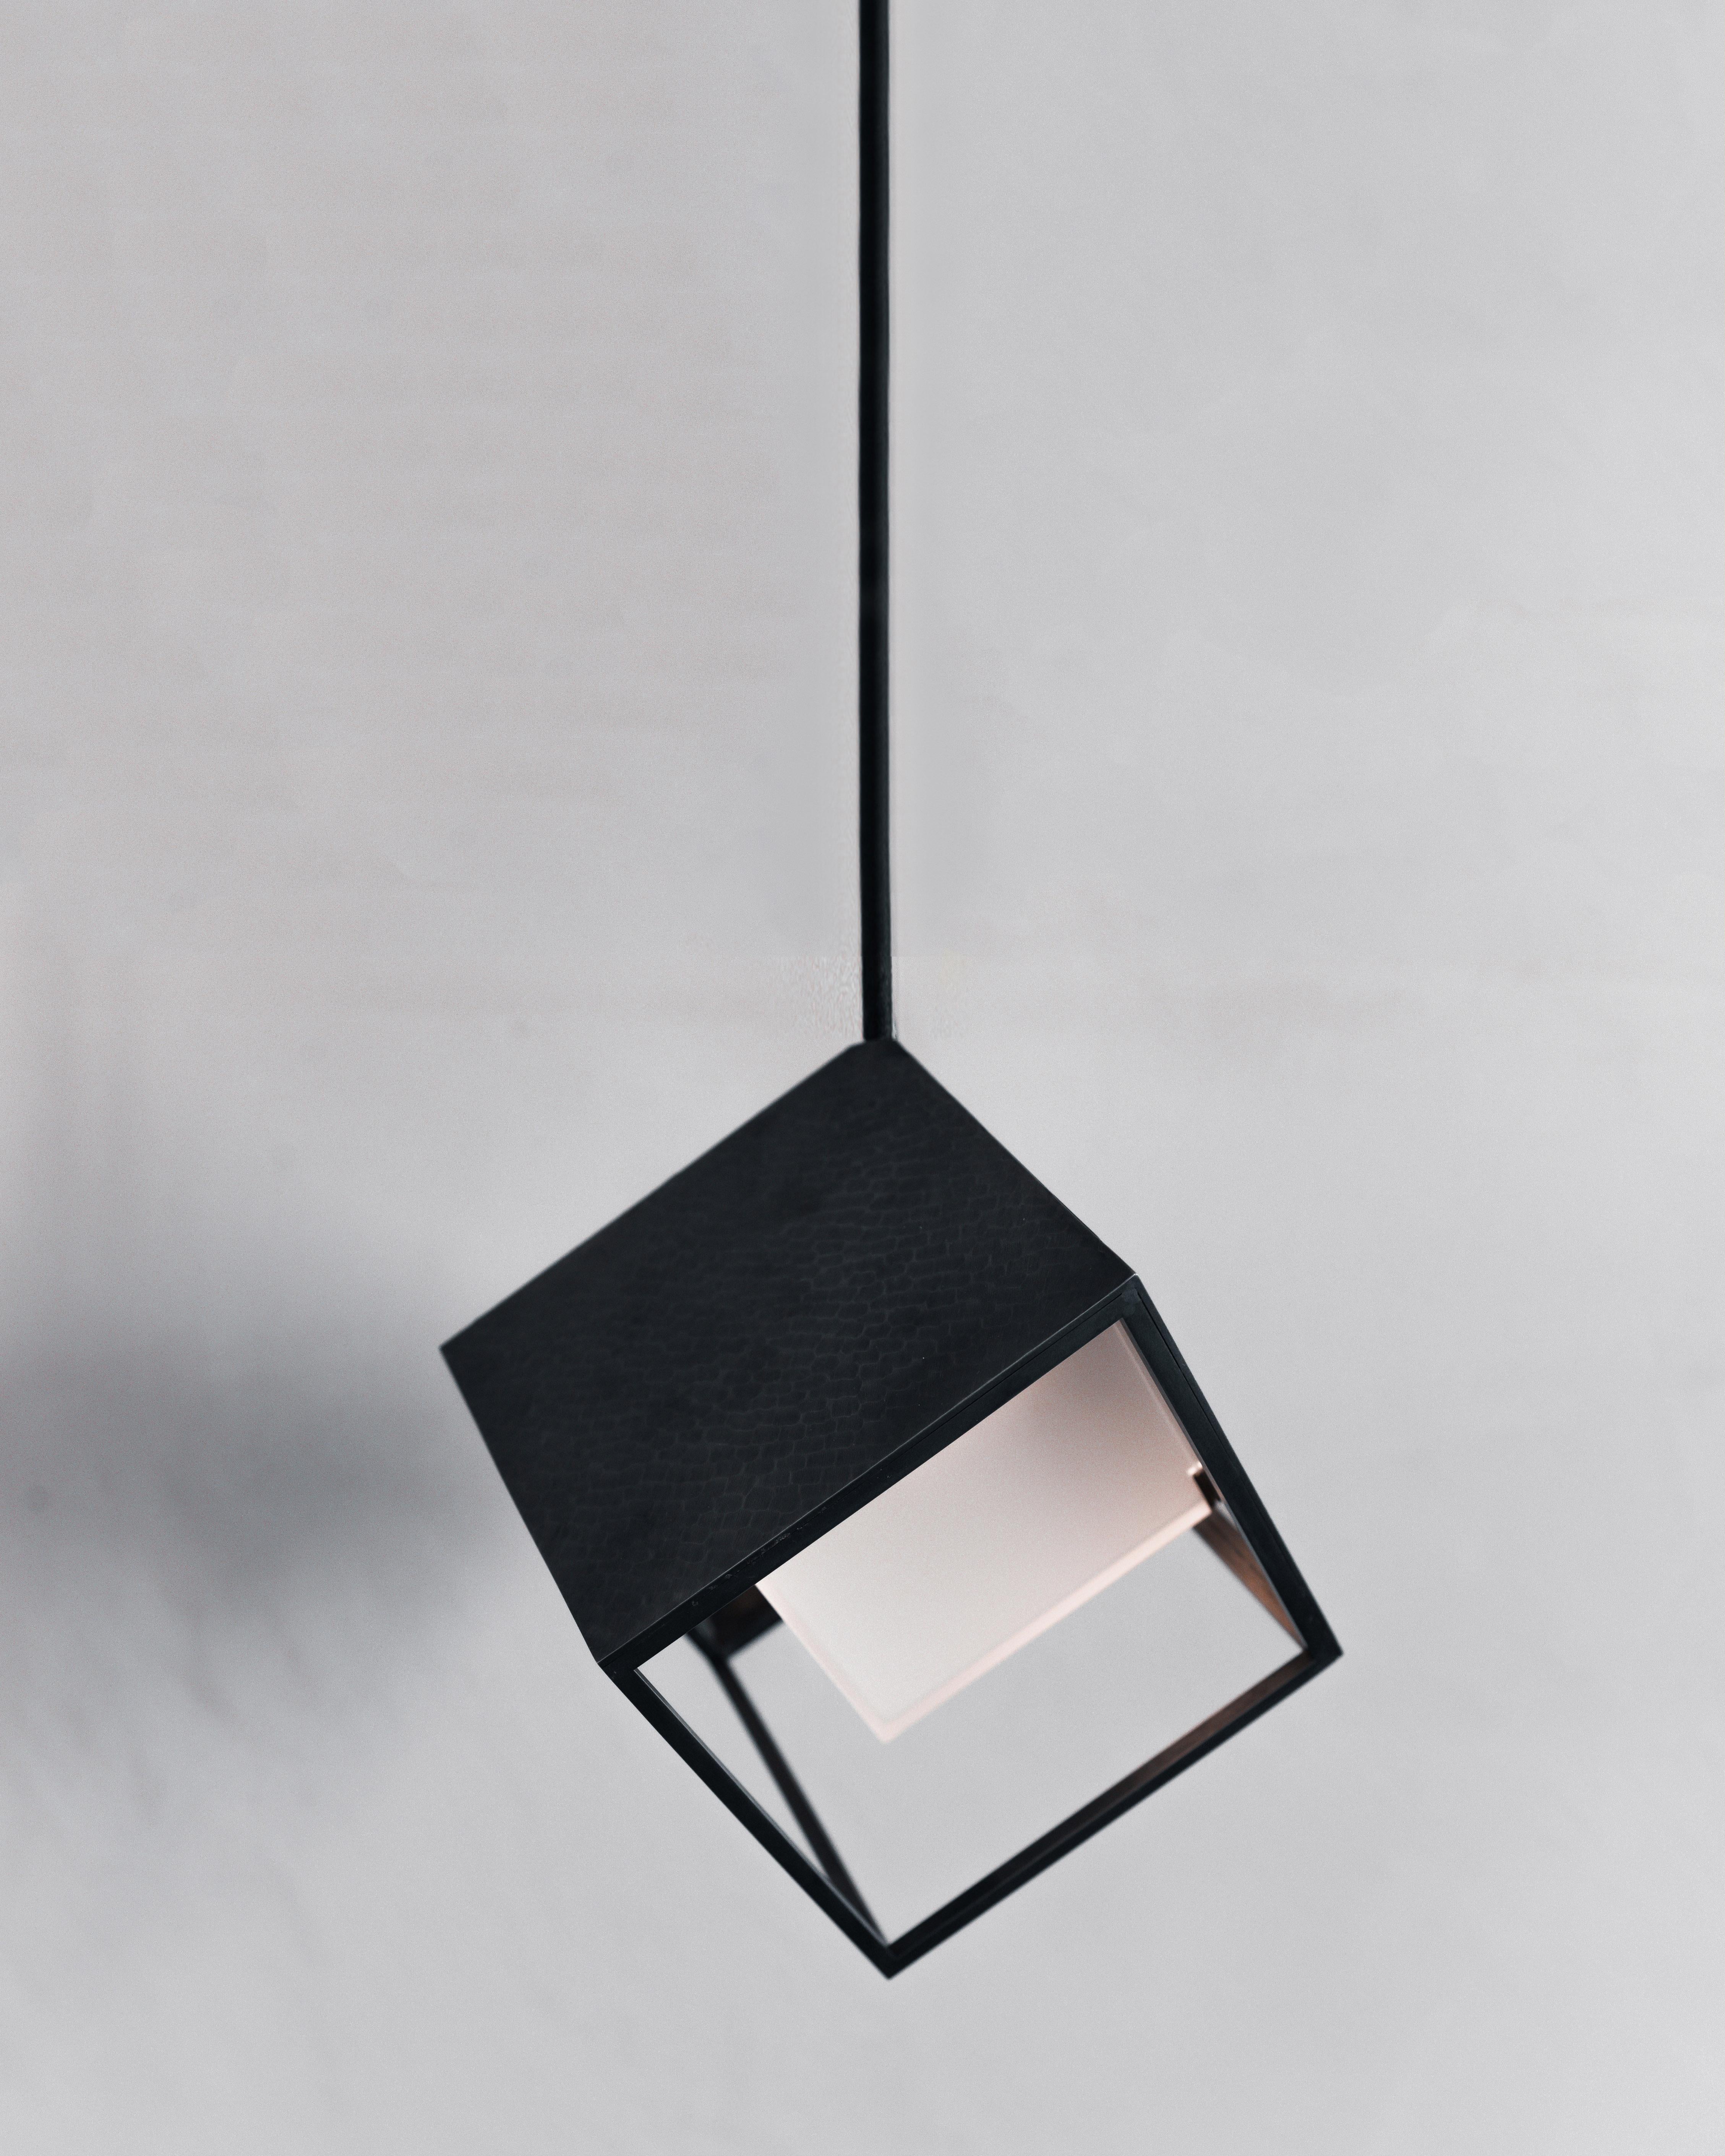 UNIS est la cellule unitaire de la collection ISOS, une lampe suspendue inspirée de la forme la plus simple et la plus courante que l'on trouve dans les cristaux et les minéraux, le cube. La géométrie du pendentif en acier se caractérise par un